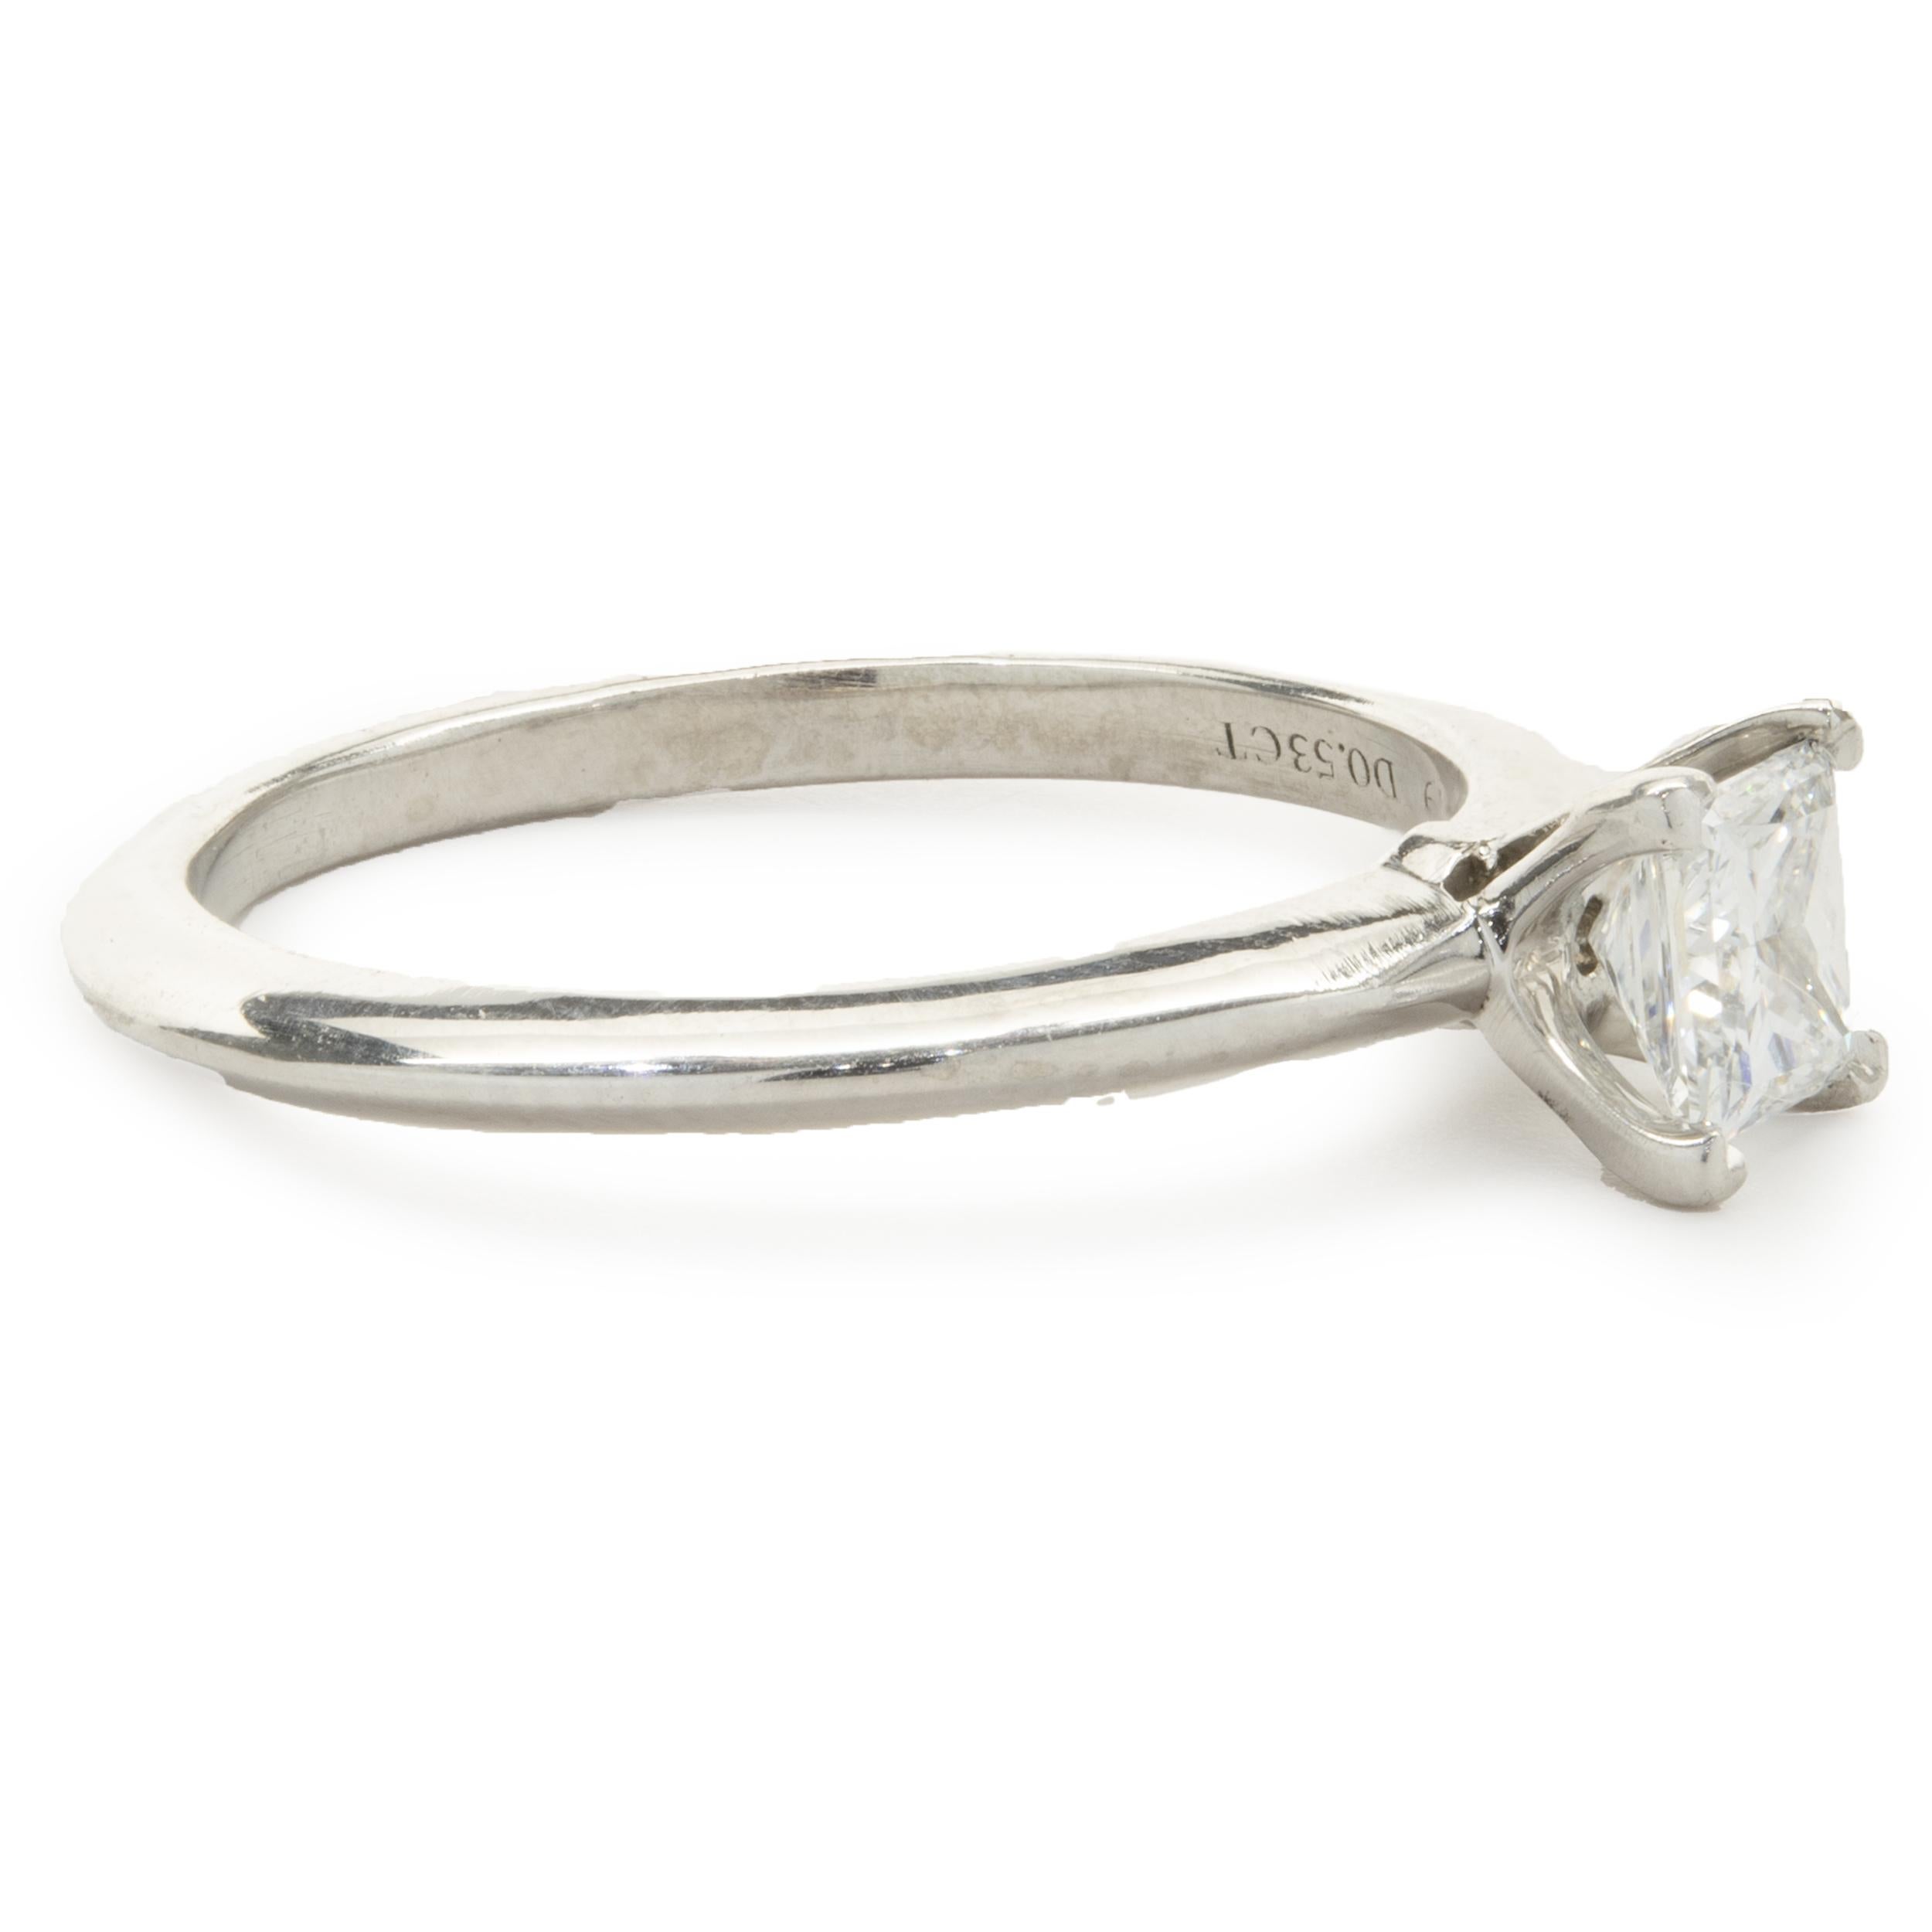 Créateur : Tiffany & Co. 
Matériau : platine
Diamant : 1 taille princesse = 0,53ct
Couleur : H
Clarté : VS2
Taille : 7
Dimensions : la partie supérieure de l'anneau mesure 5,70 mm de large
Poids : 4,64 grammes